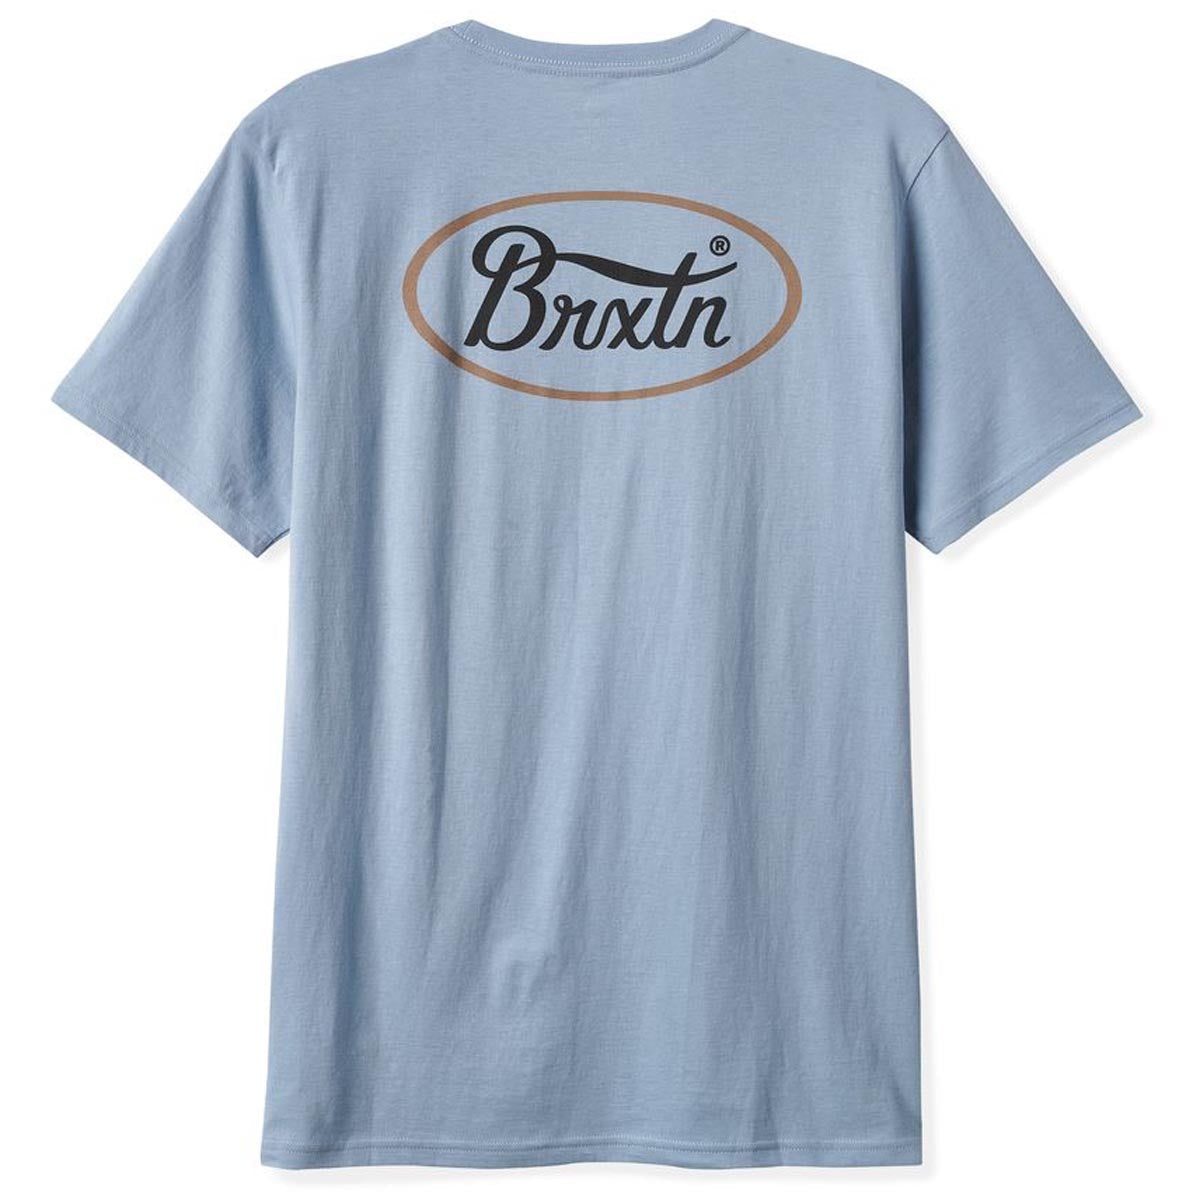 Brixton Parsons T-Shirt - Dusty Blue/Washed Black/Stone image 2